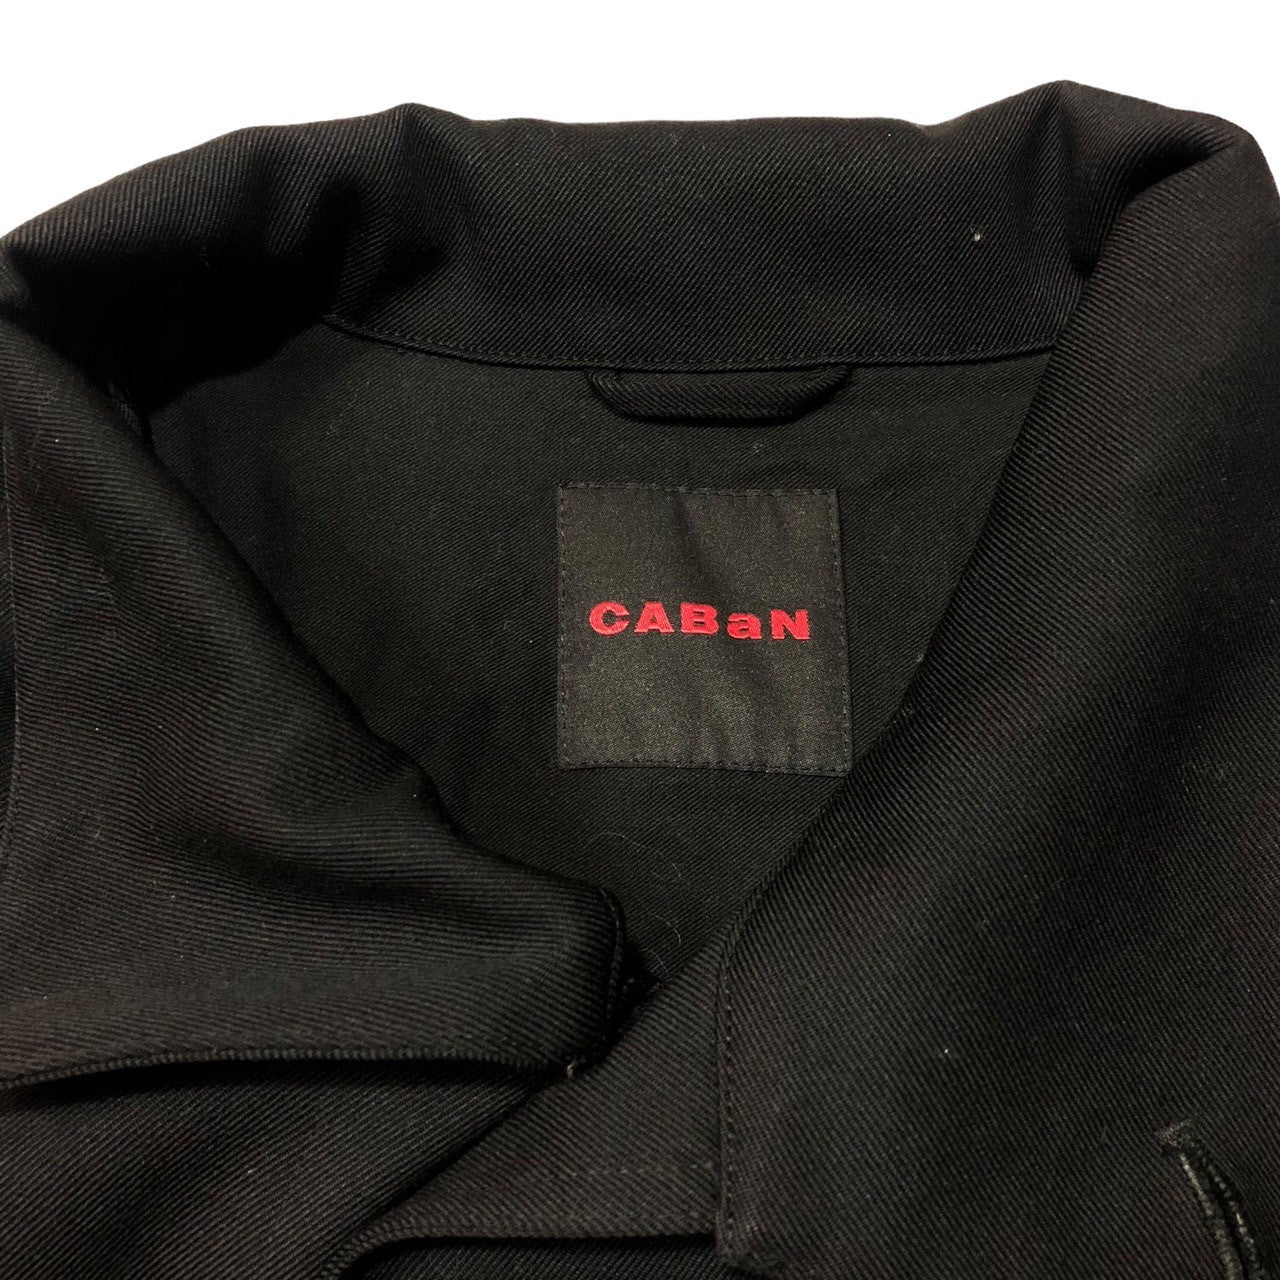 CABaN(キャバン) 23AW Wool gabardine stand collar coat ウールギャバジン スタンドカラー コート 59-09-94-09001 M ブラック 完売品 参考定価97,900円(税込)